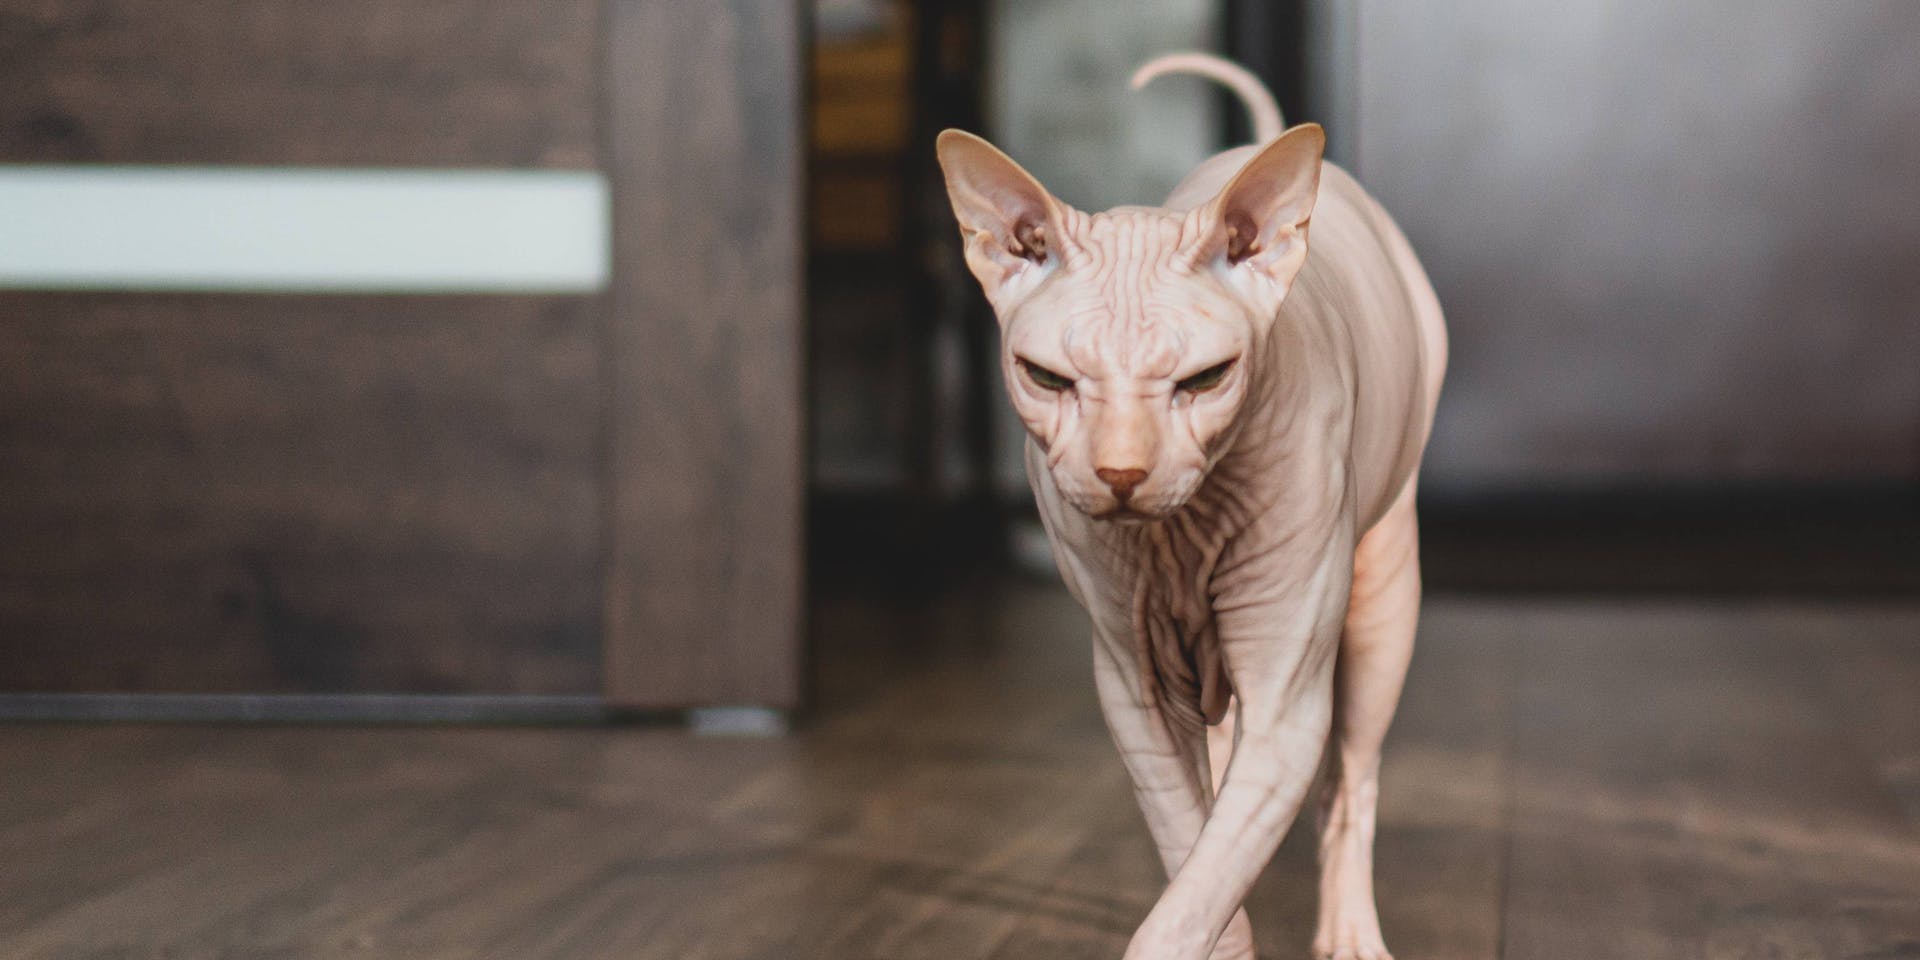 A hairless cat walking across a wooden floor.